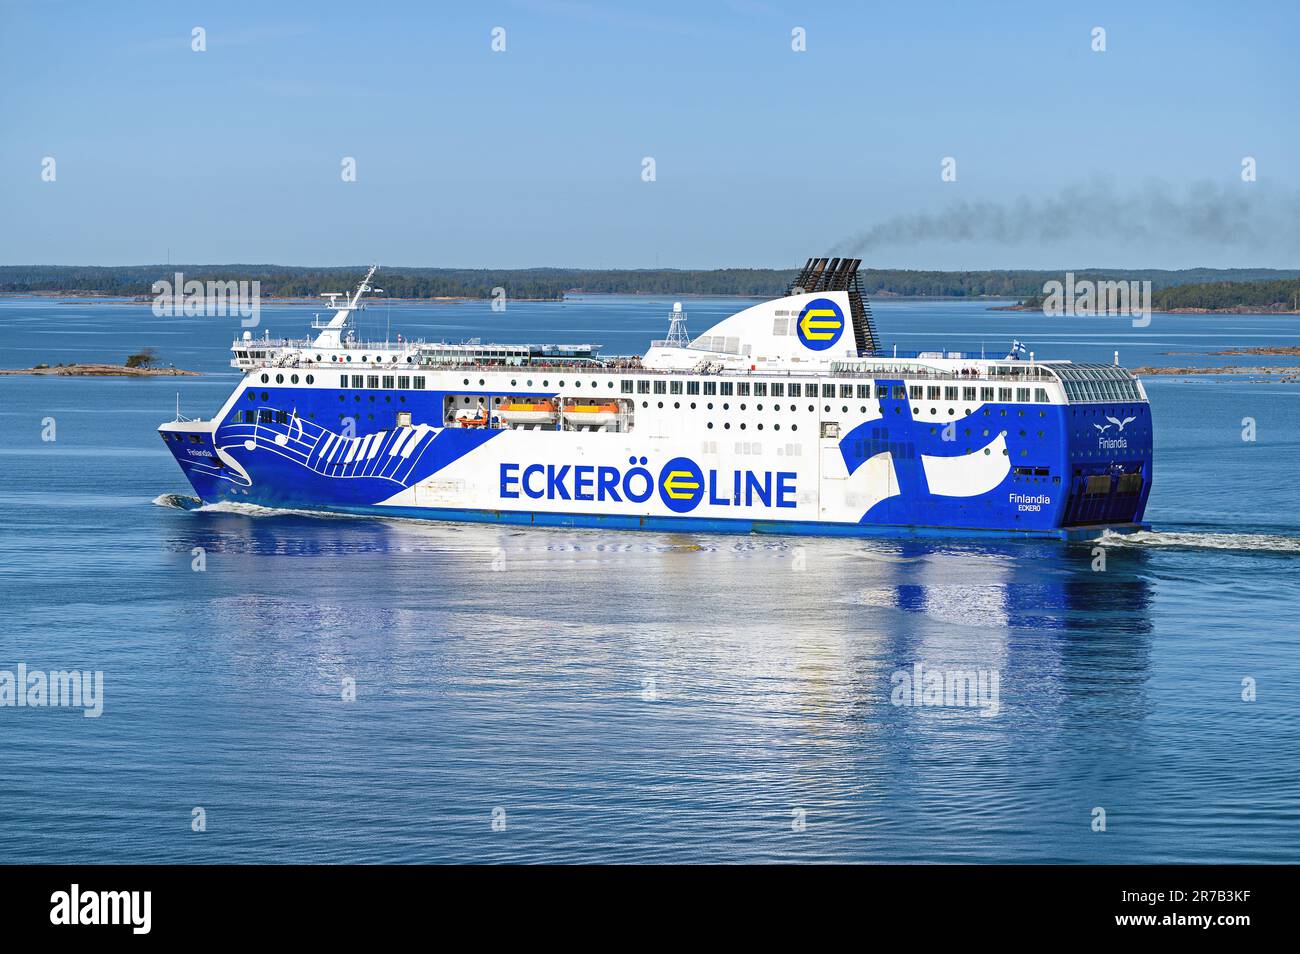 Finlandia è un traghetto gestito dalla società finlandese Eckero Line sulla rotta tra Helsinki e Tallinn. Foto Stock